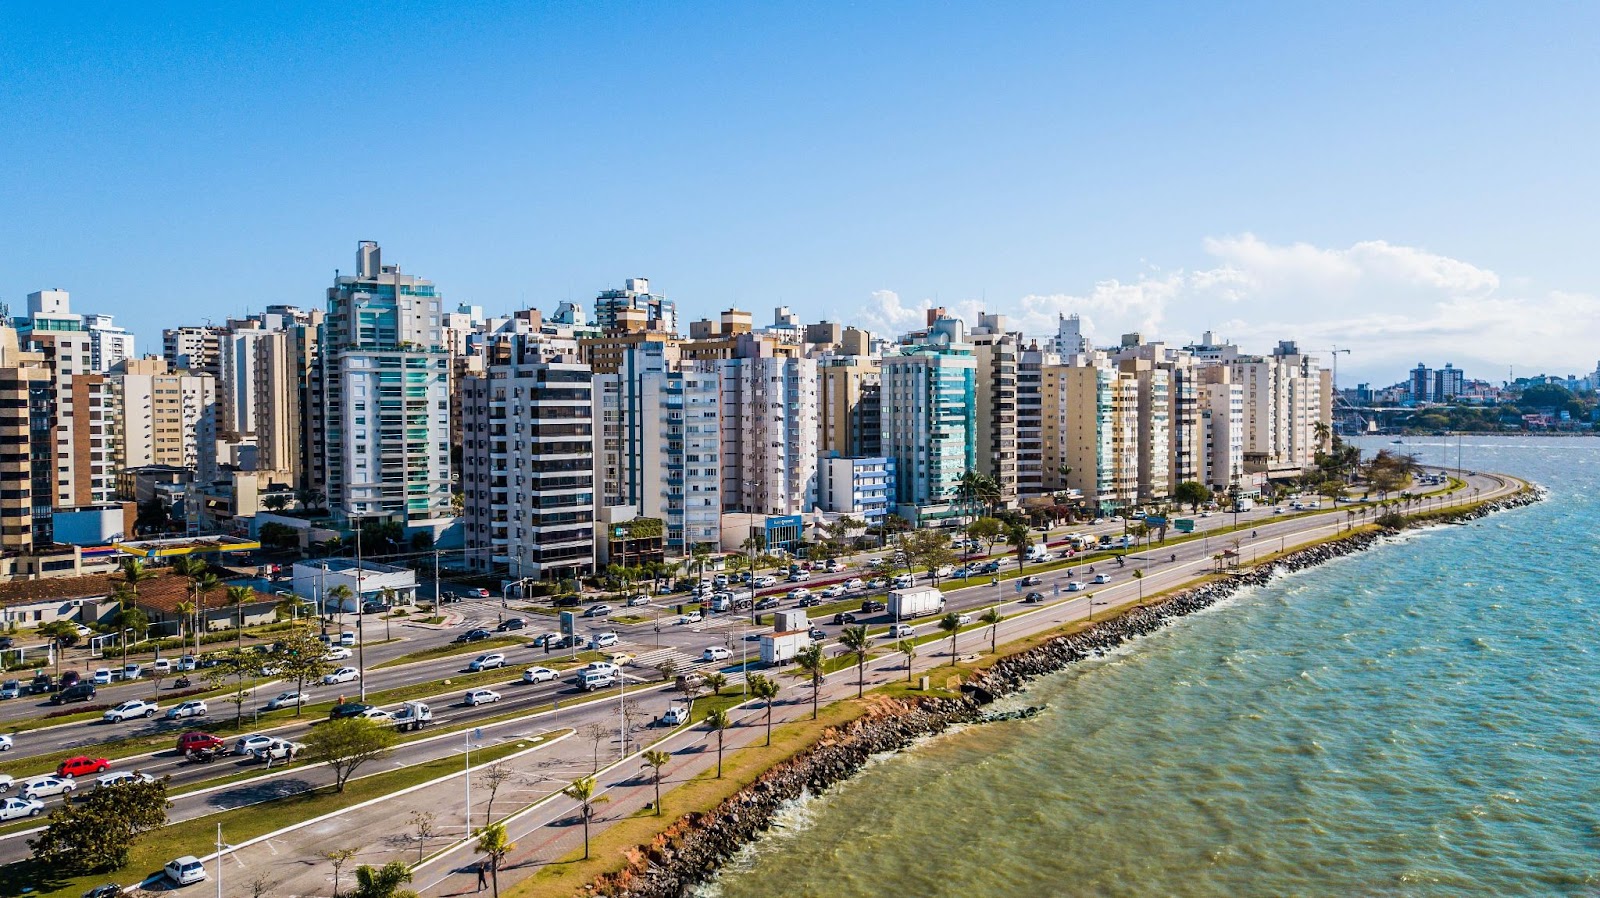 Vista aérea da Avenida Beira-Mar, em Florianópolis. A longa via onde circulam vários automóveis é limitada pelo mar e por prédios modernos de diversos tamanhos. Ao fundo, o céu aparece azul e quase sem nuvens.